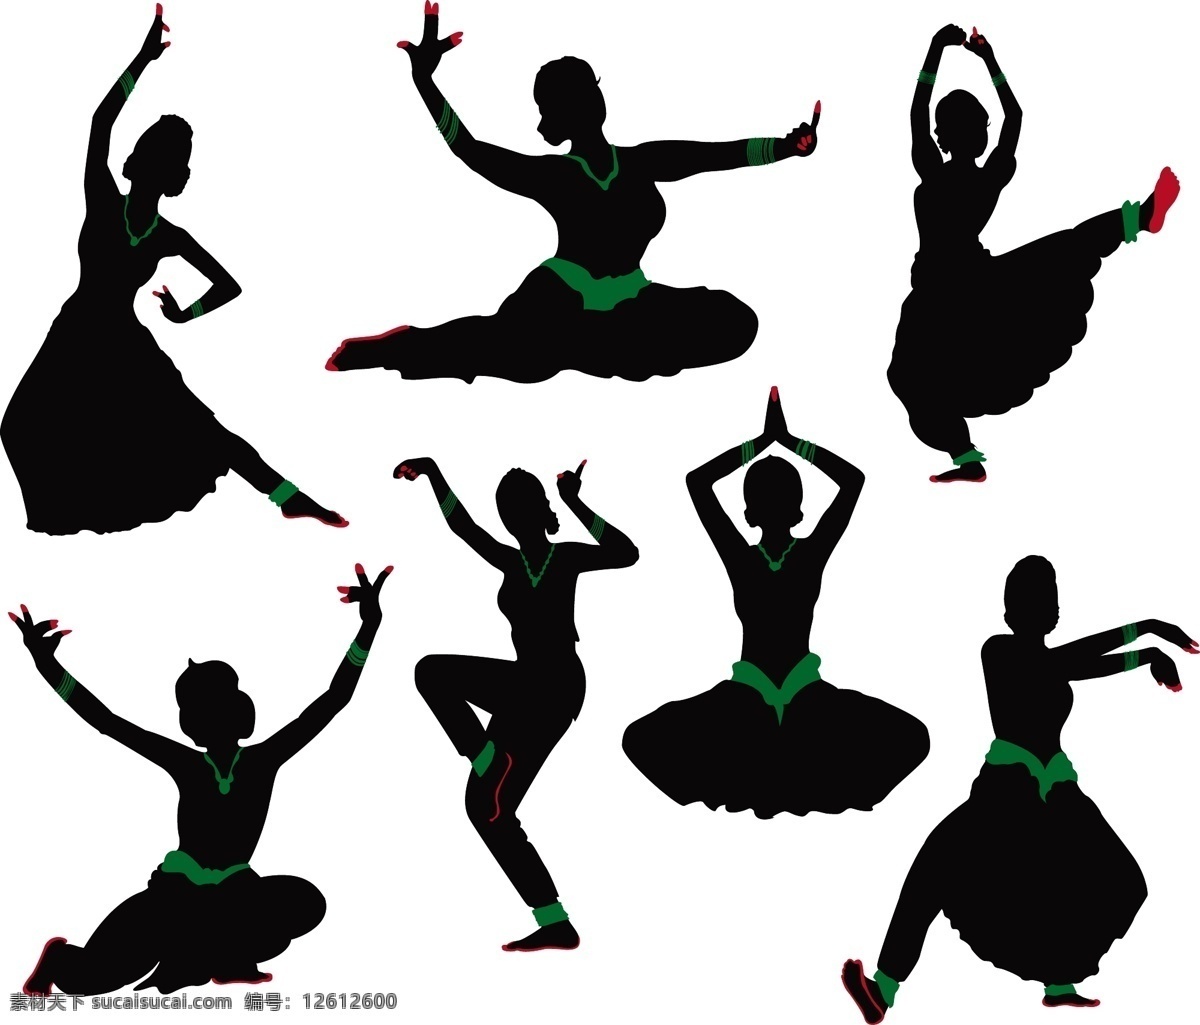 妇女女性 女性剪影 人物剪影 人物 剪影 矢量 人物矢量素材 少女 矢量人物 跳舞 文化艺术 模板下载 印度舞 舞蹈 印度服饰